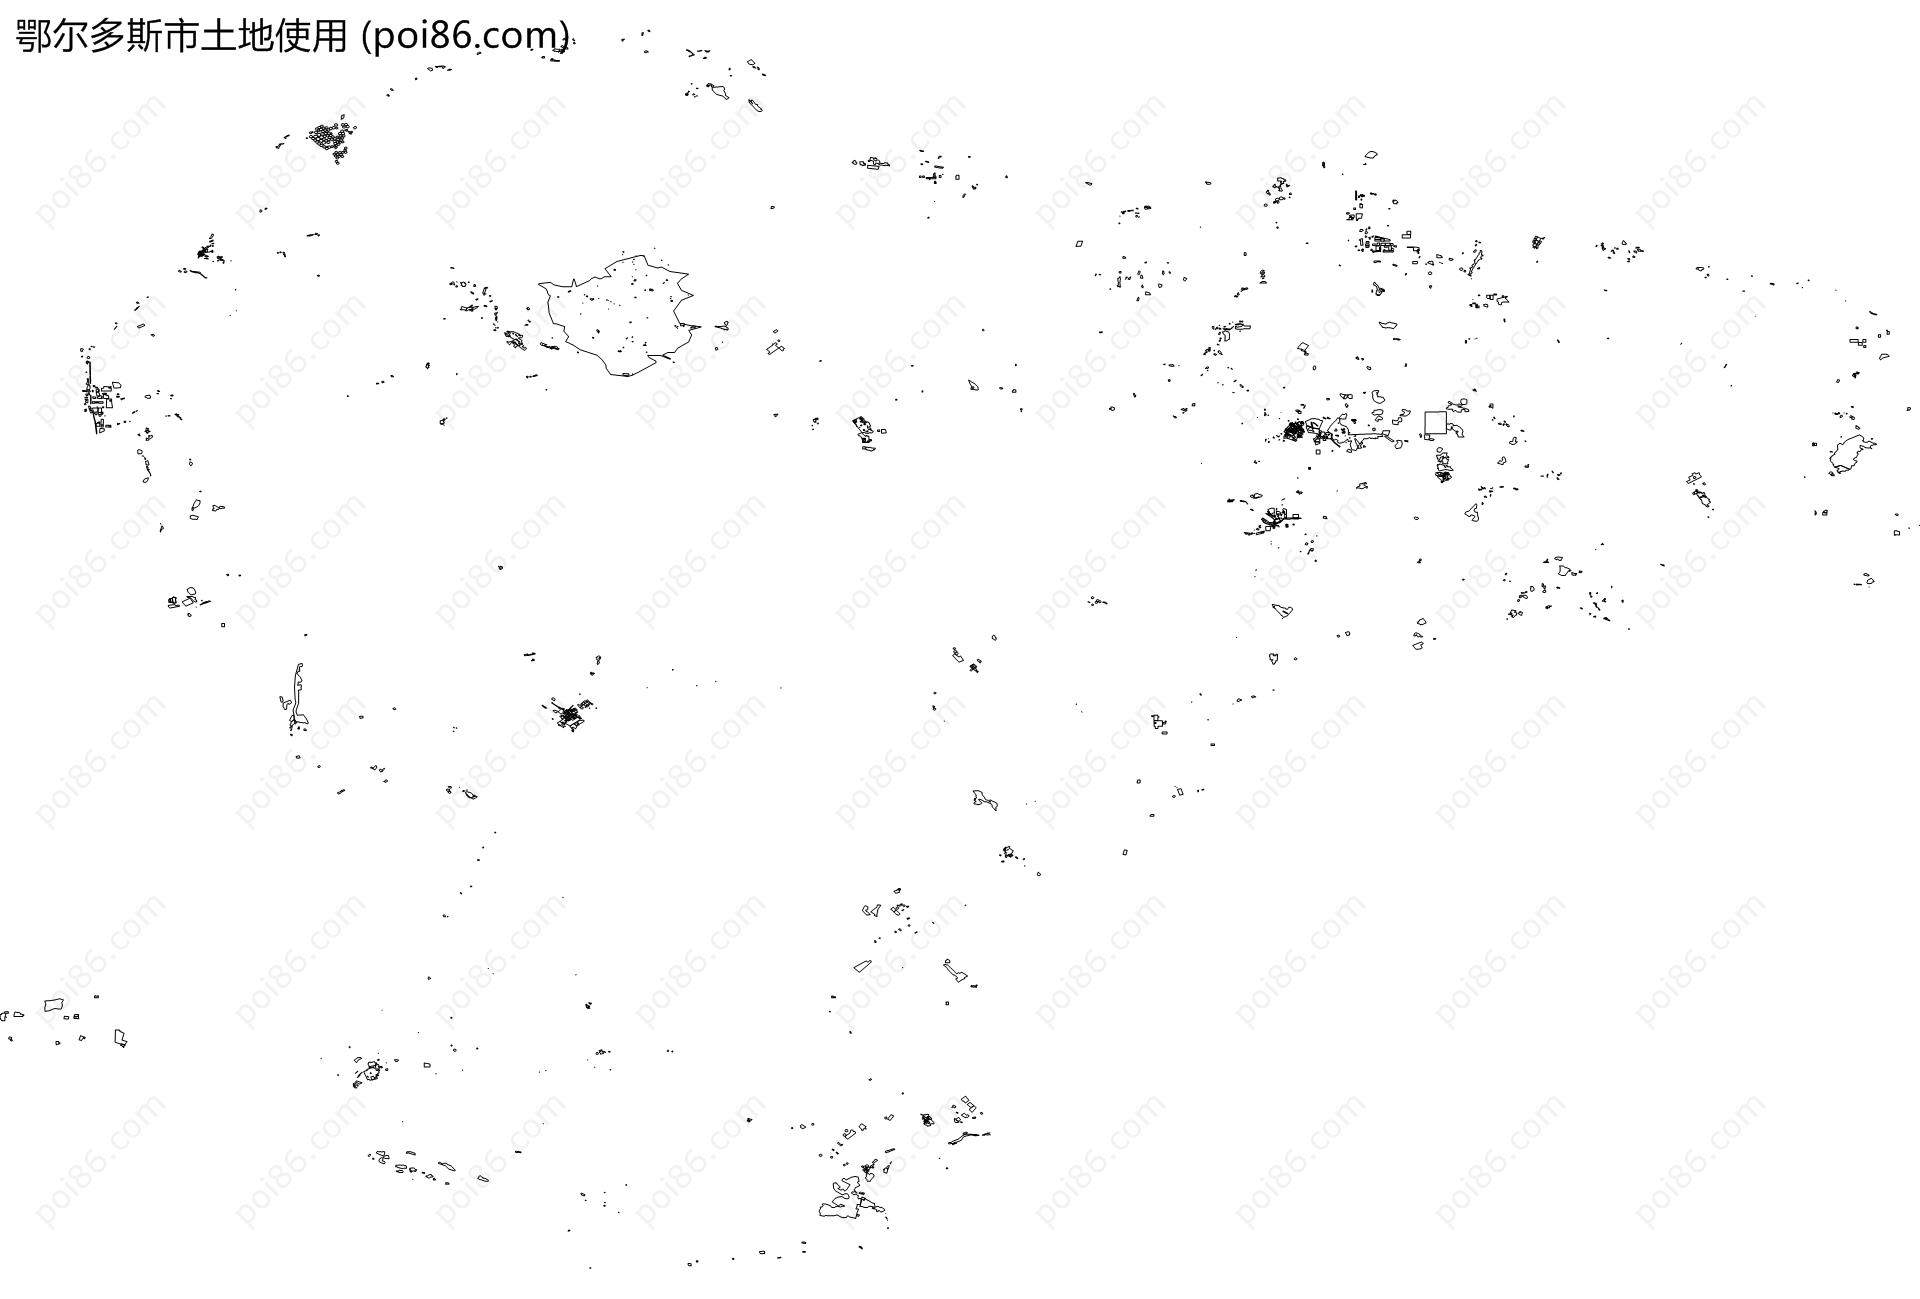 鄂尔多斯市土地使用地图